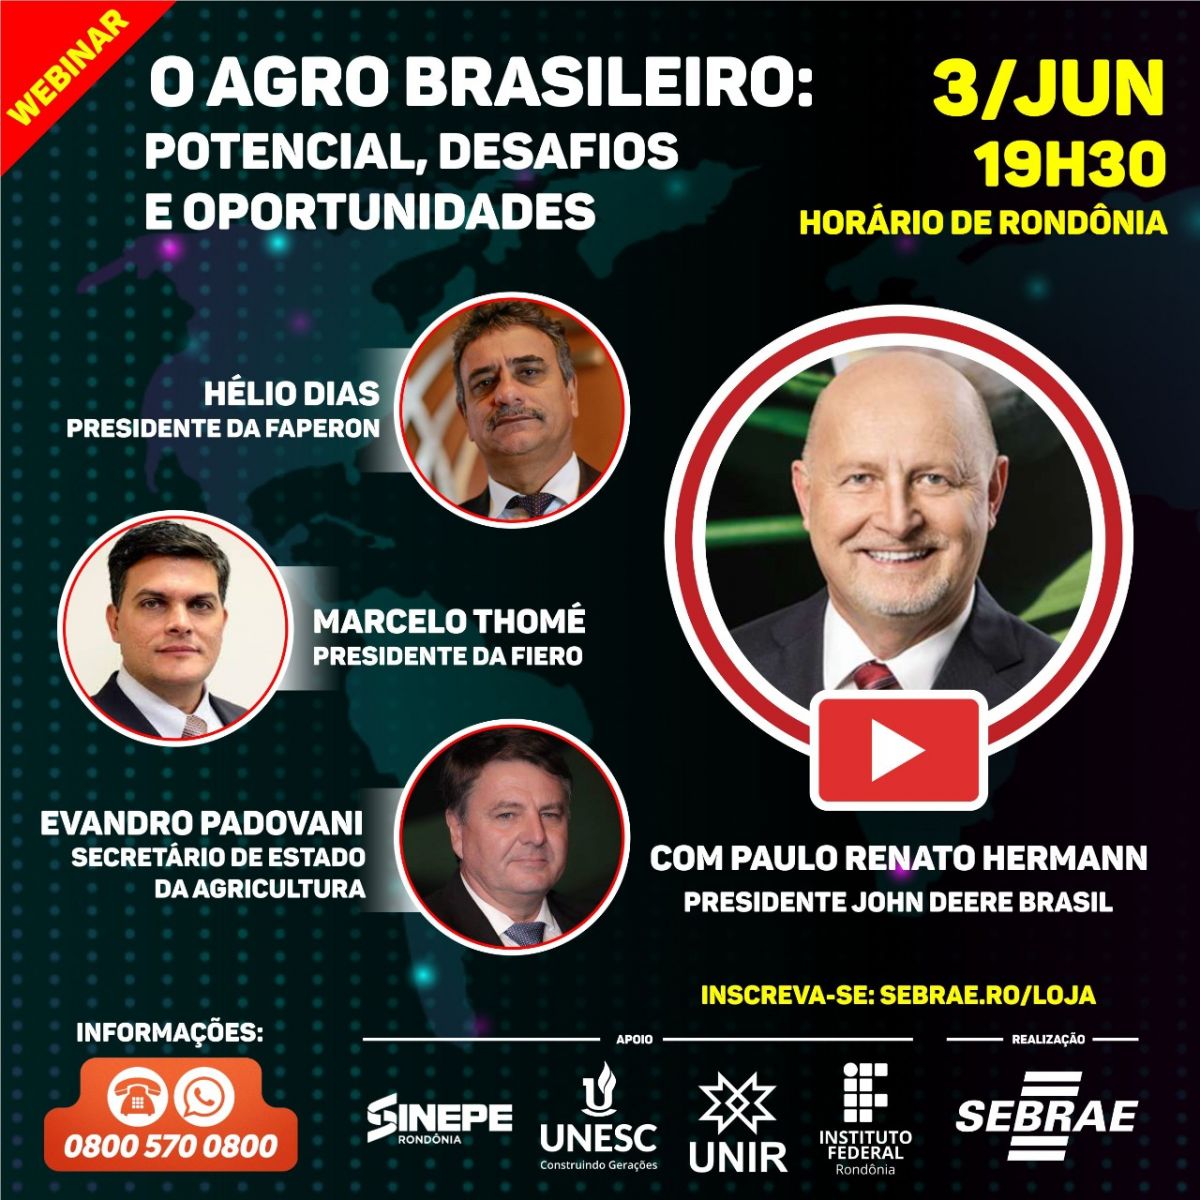 SEBRAE-RO: NESTA QUARTA-FEIRA WEBINAR INÉDITO COM PAULO RENATO HERRMANN - News Rondônia